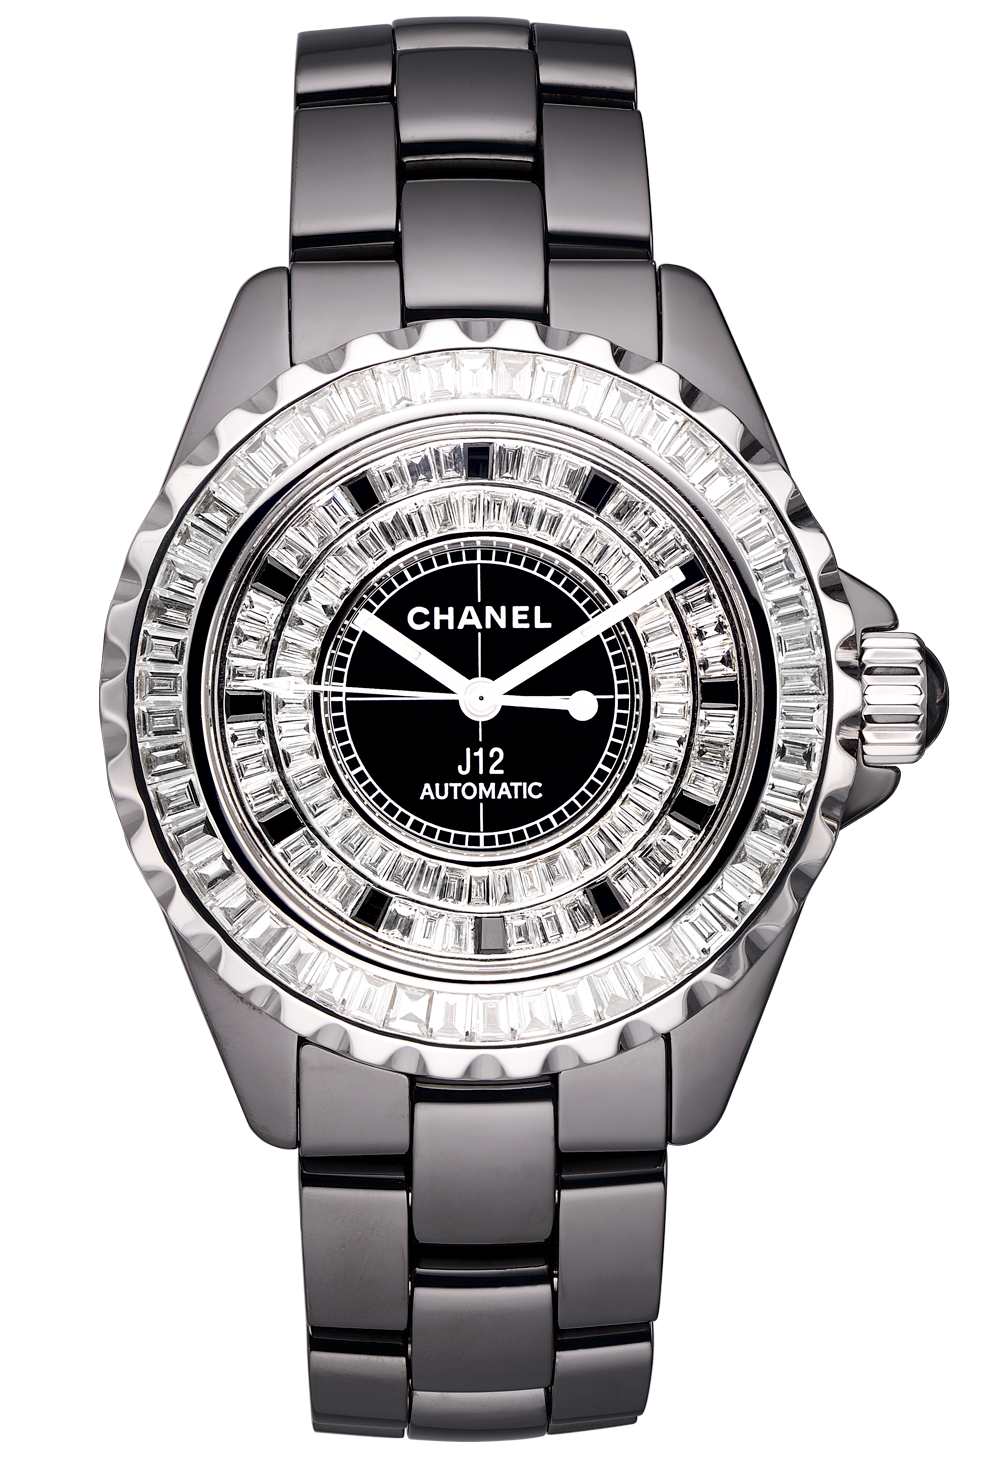 Купить часы Chanel 08969 за 14 800 руб  в магазине копий часов